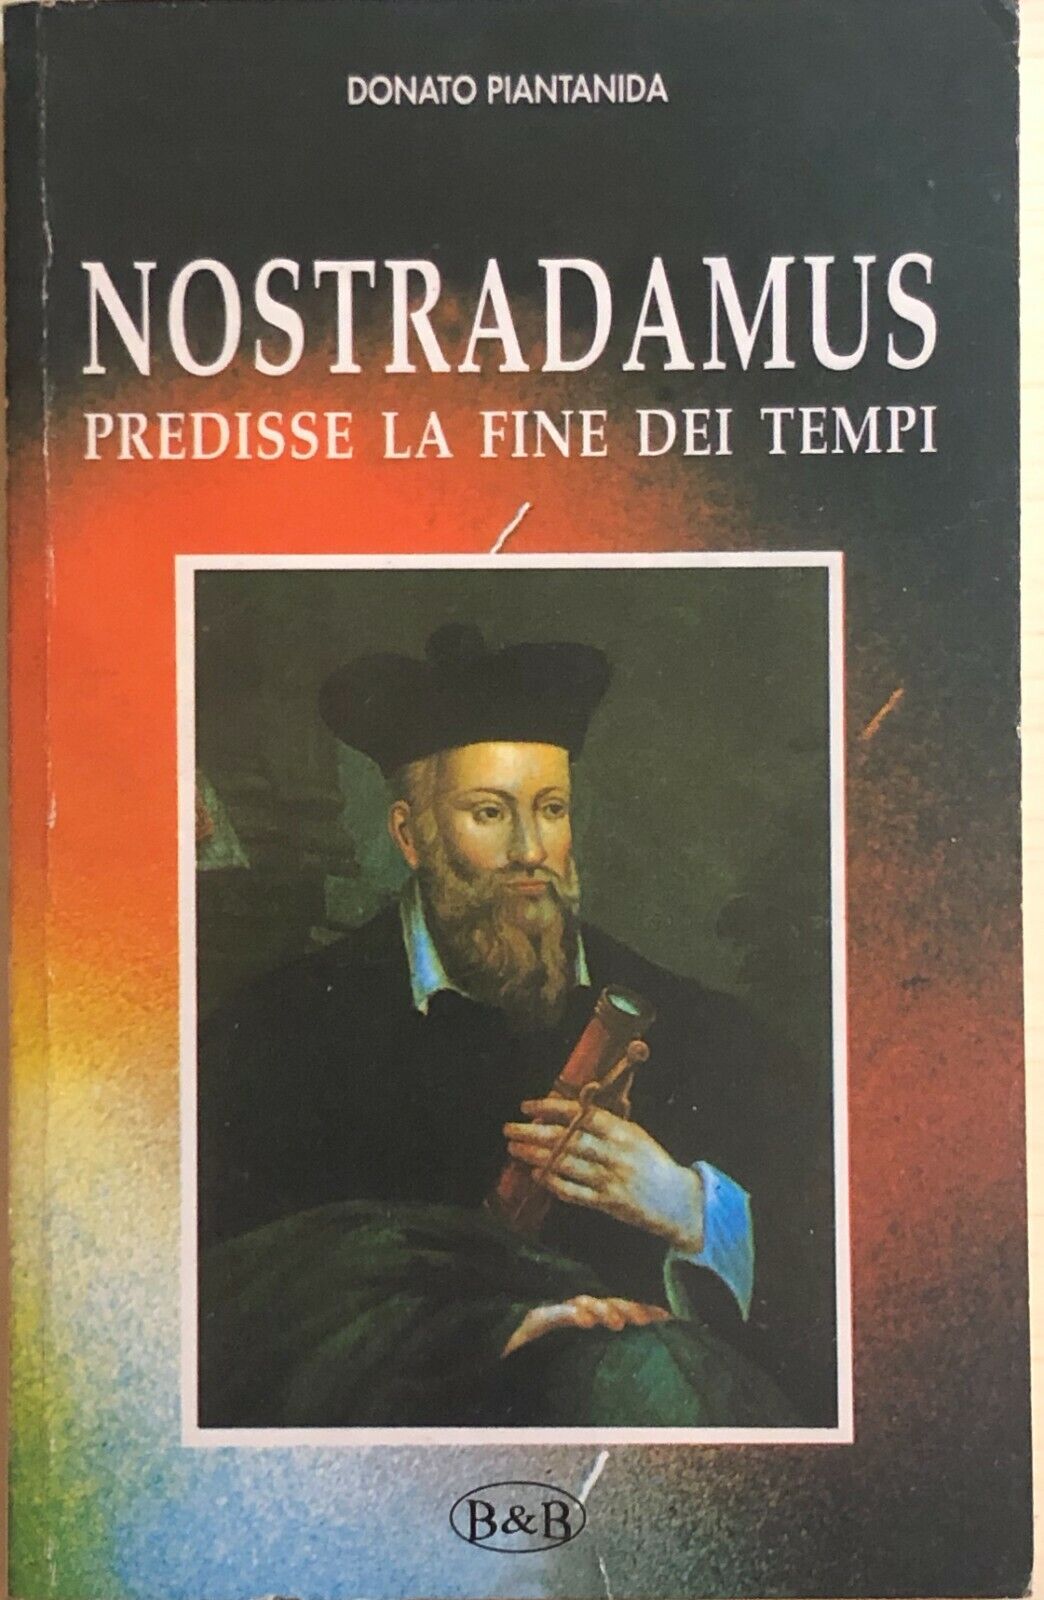 Nostradamus predisse la fine dei tempi di Donato Piantanida, 1998, B&b libro usato